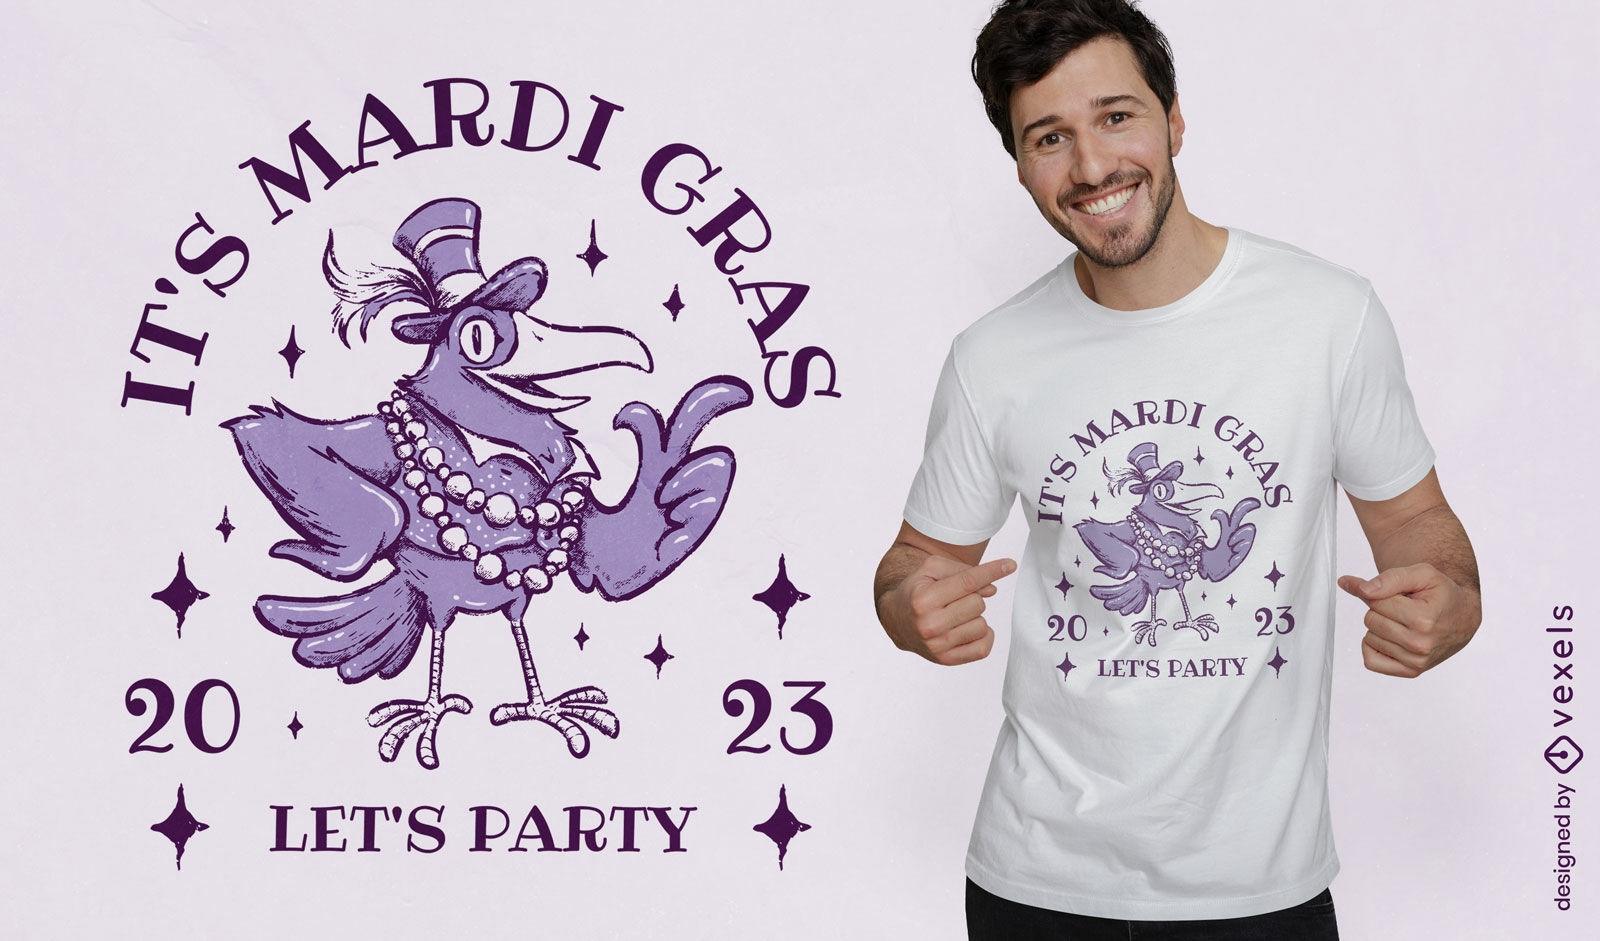 Mardi gras bird celebrating t-shirt design